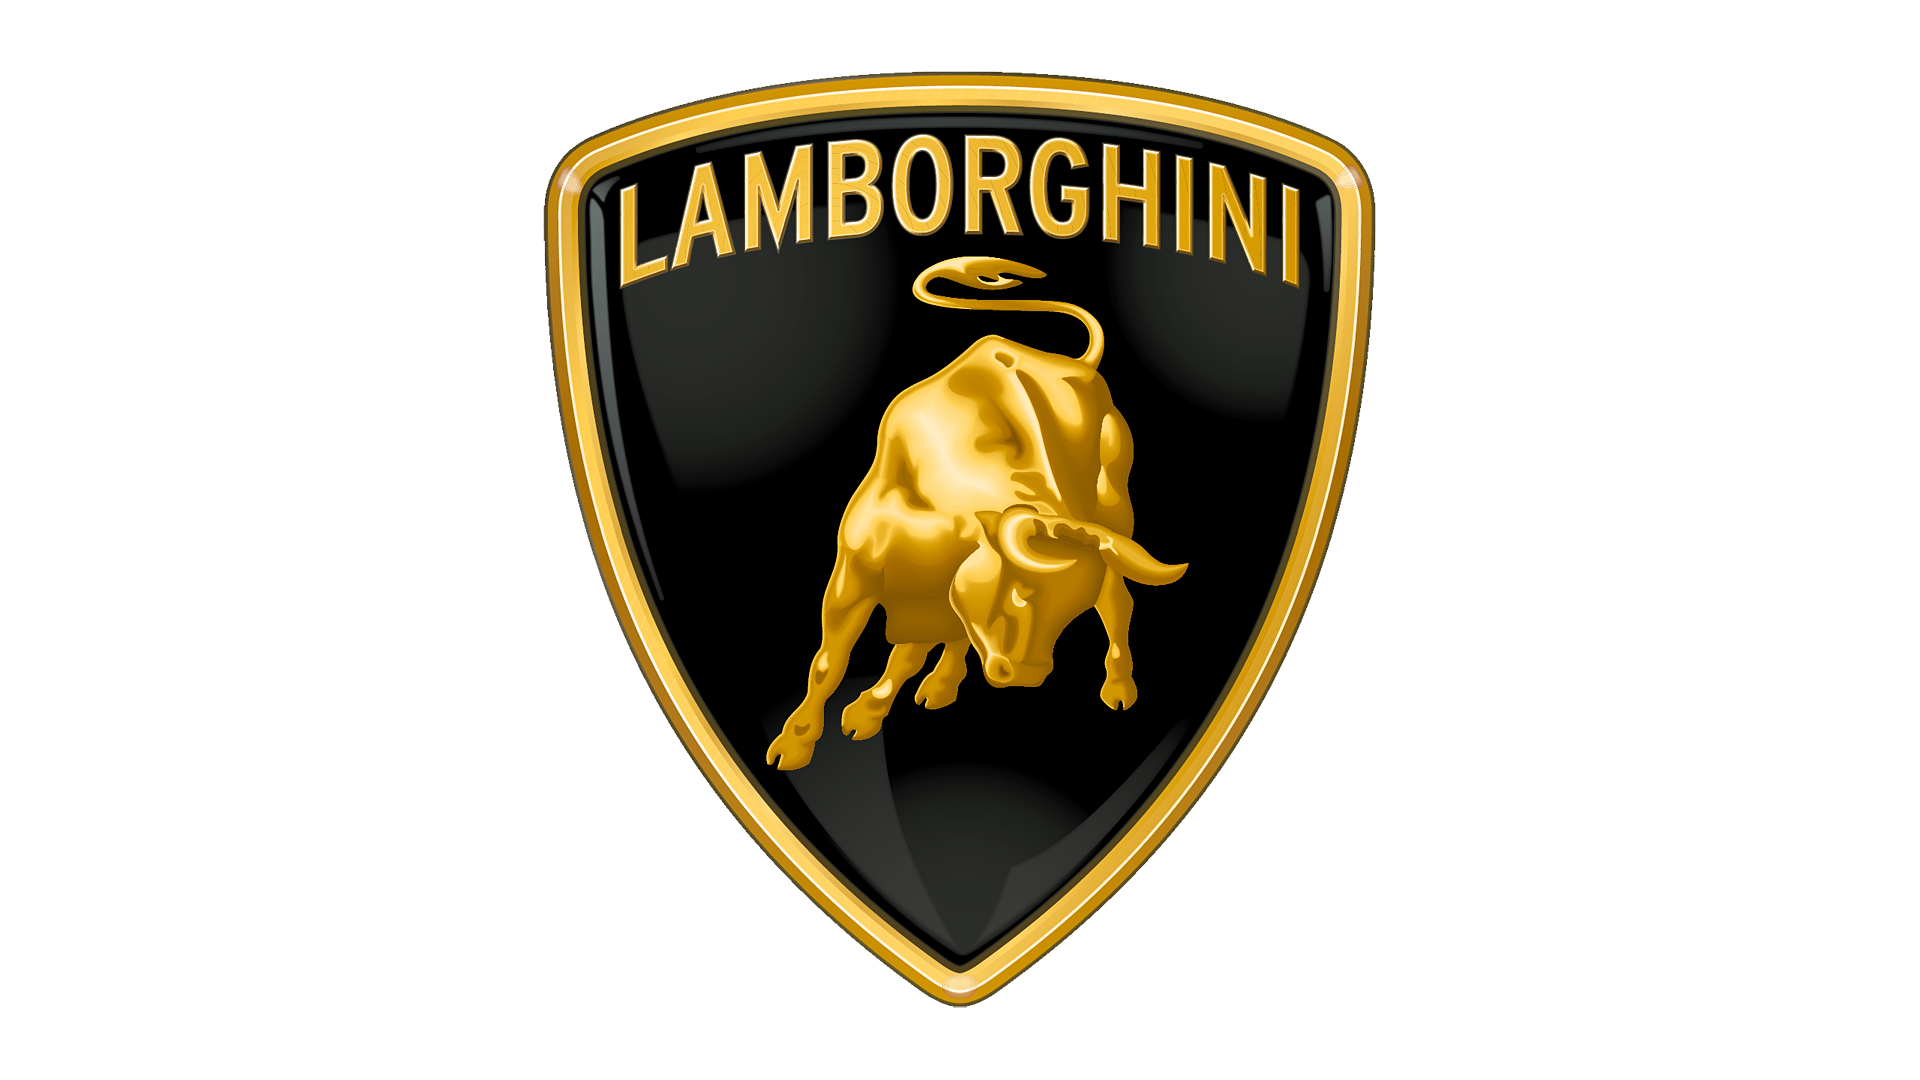  Comment obtenir les meilleures garanties et options pour assurer ma Lamborghini Gallardo à Lille ?